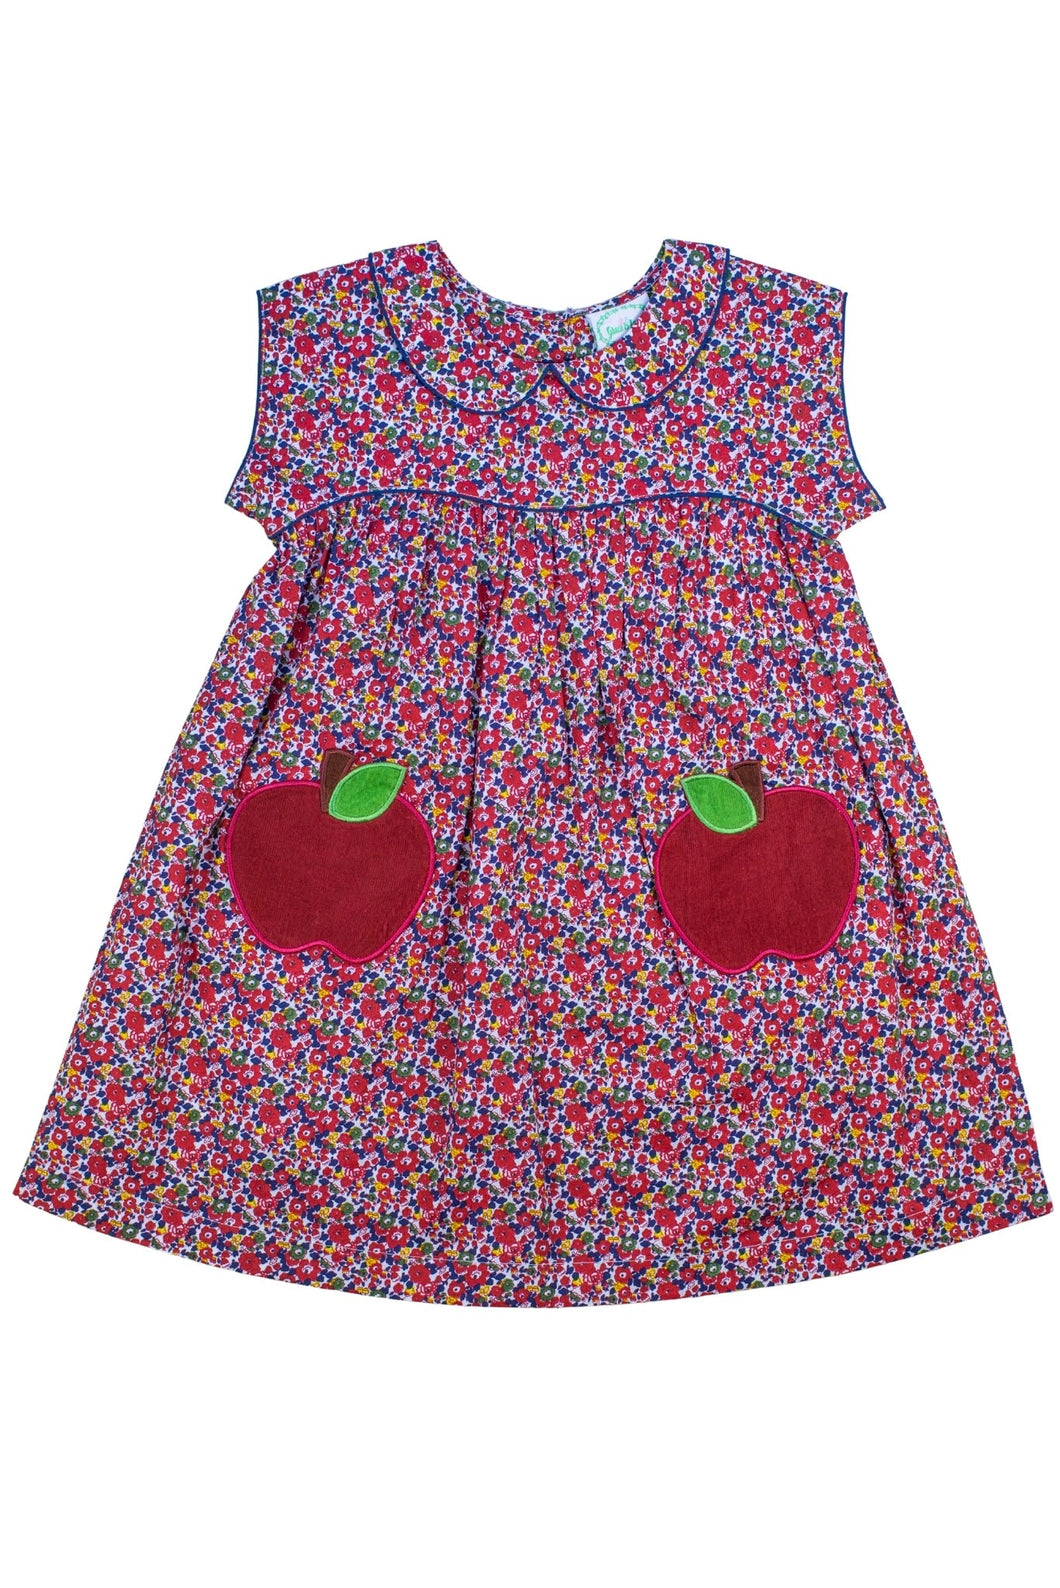 Suzanna Apple Dress